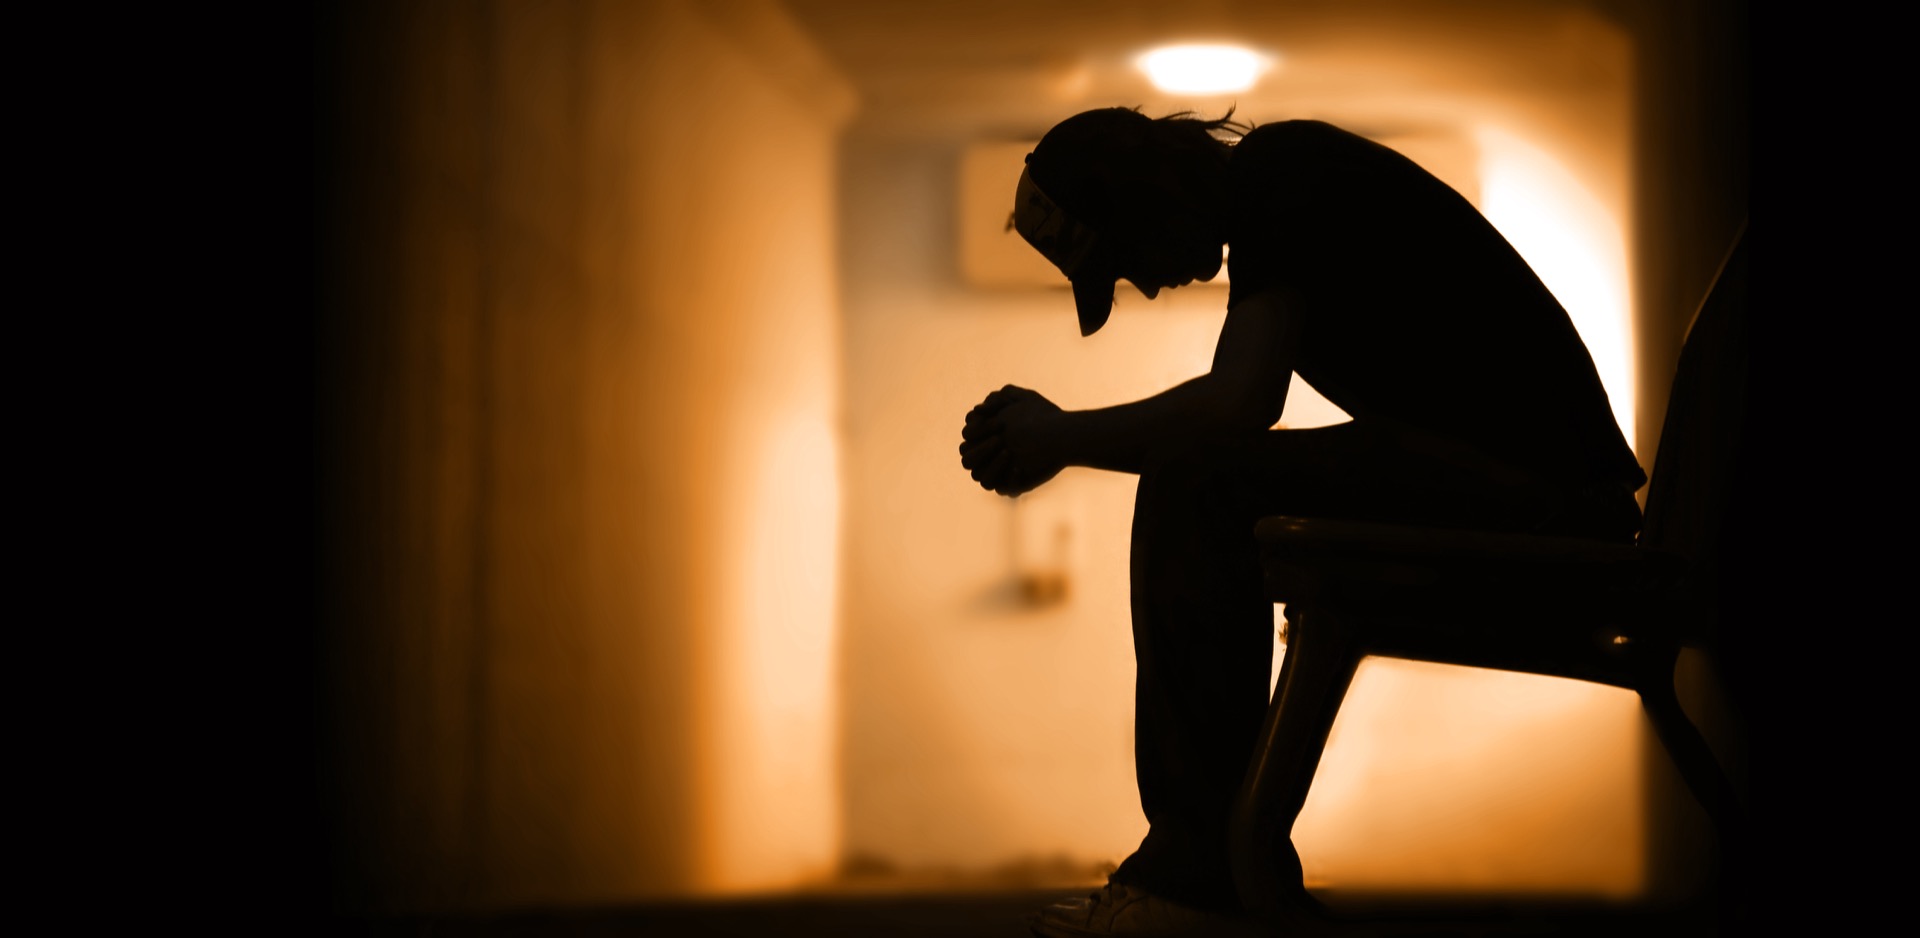 300 millions de personnes souffrent de dépression dans le monde. © Kwest, Adobe Stock